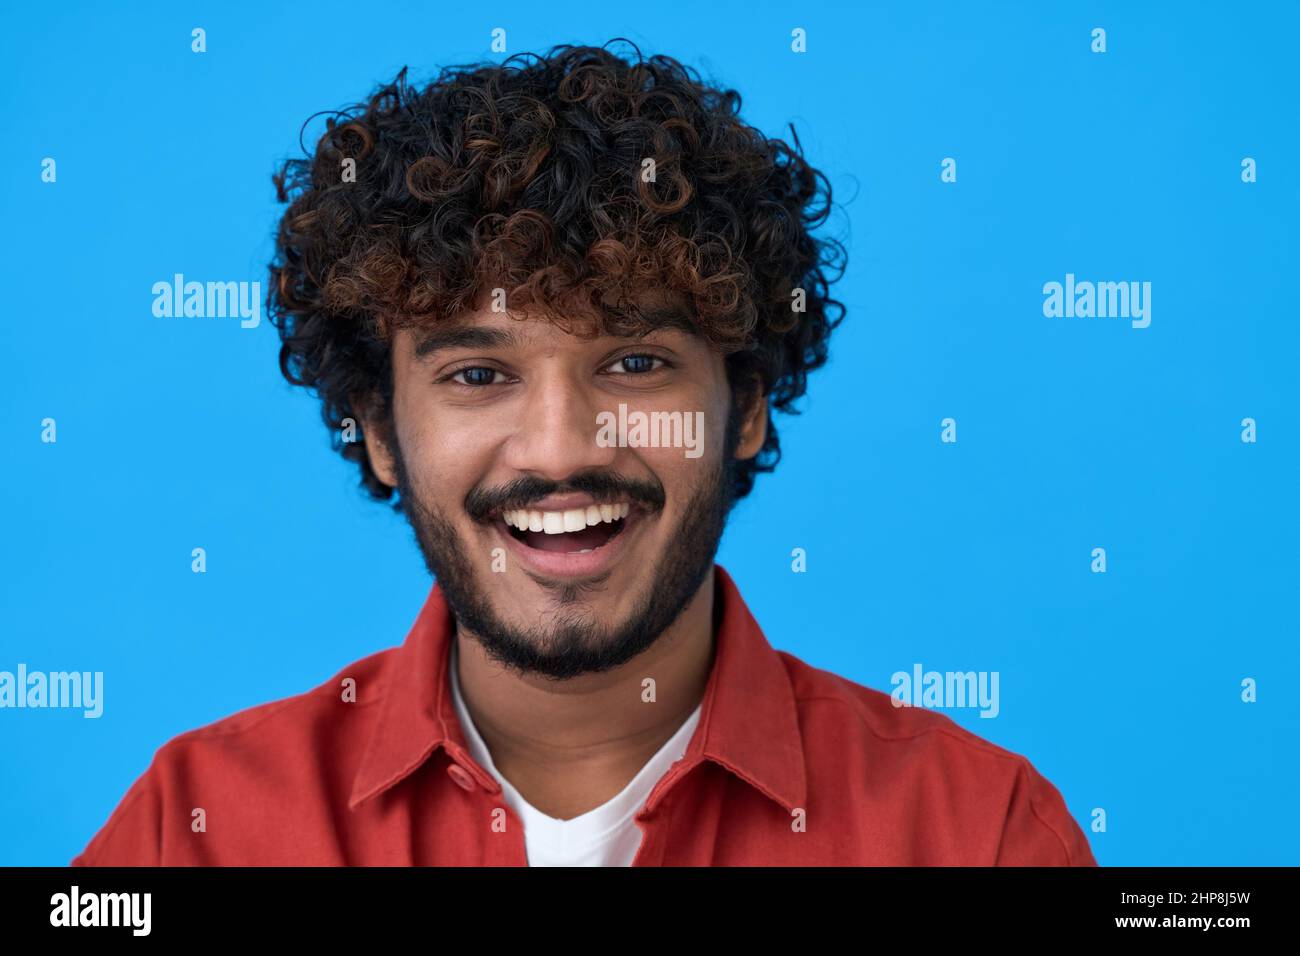 Glücklicher junger inder, der isoliert auf blauem Hintergrund lacht. Kopfbild im Porträt Stockfoto